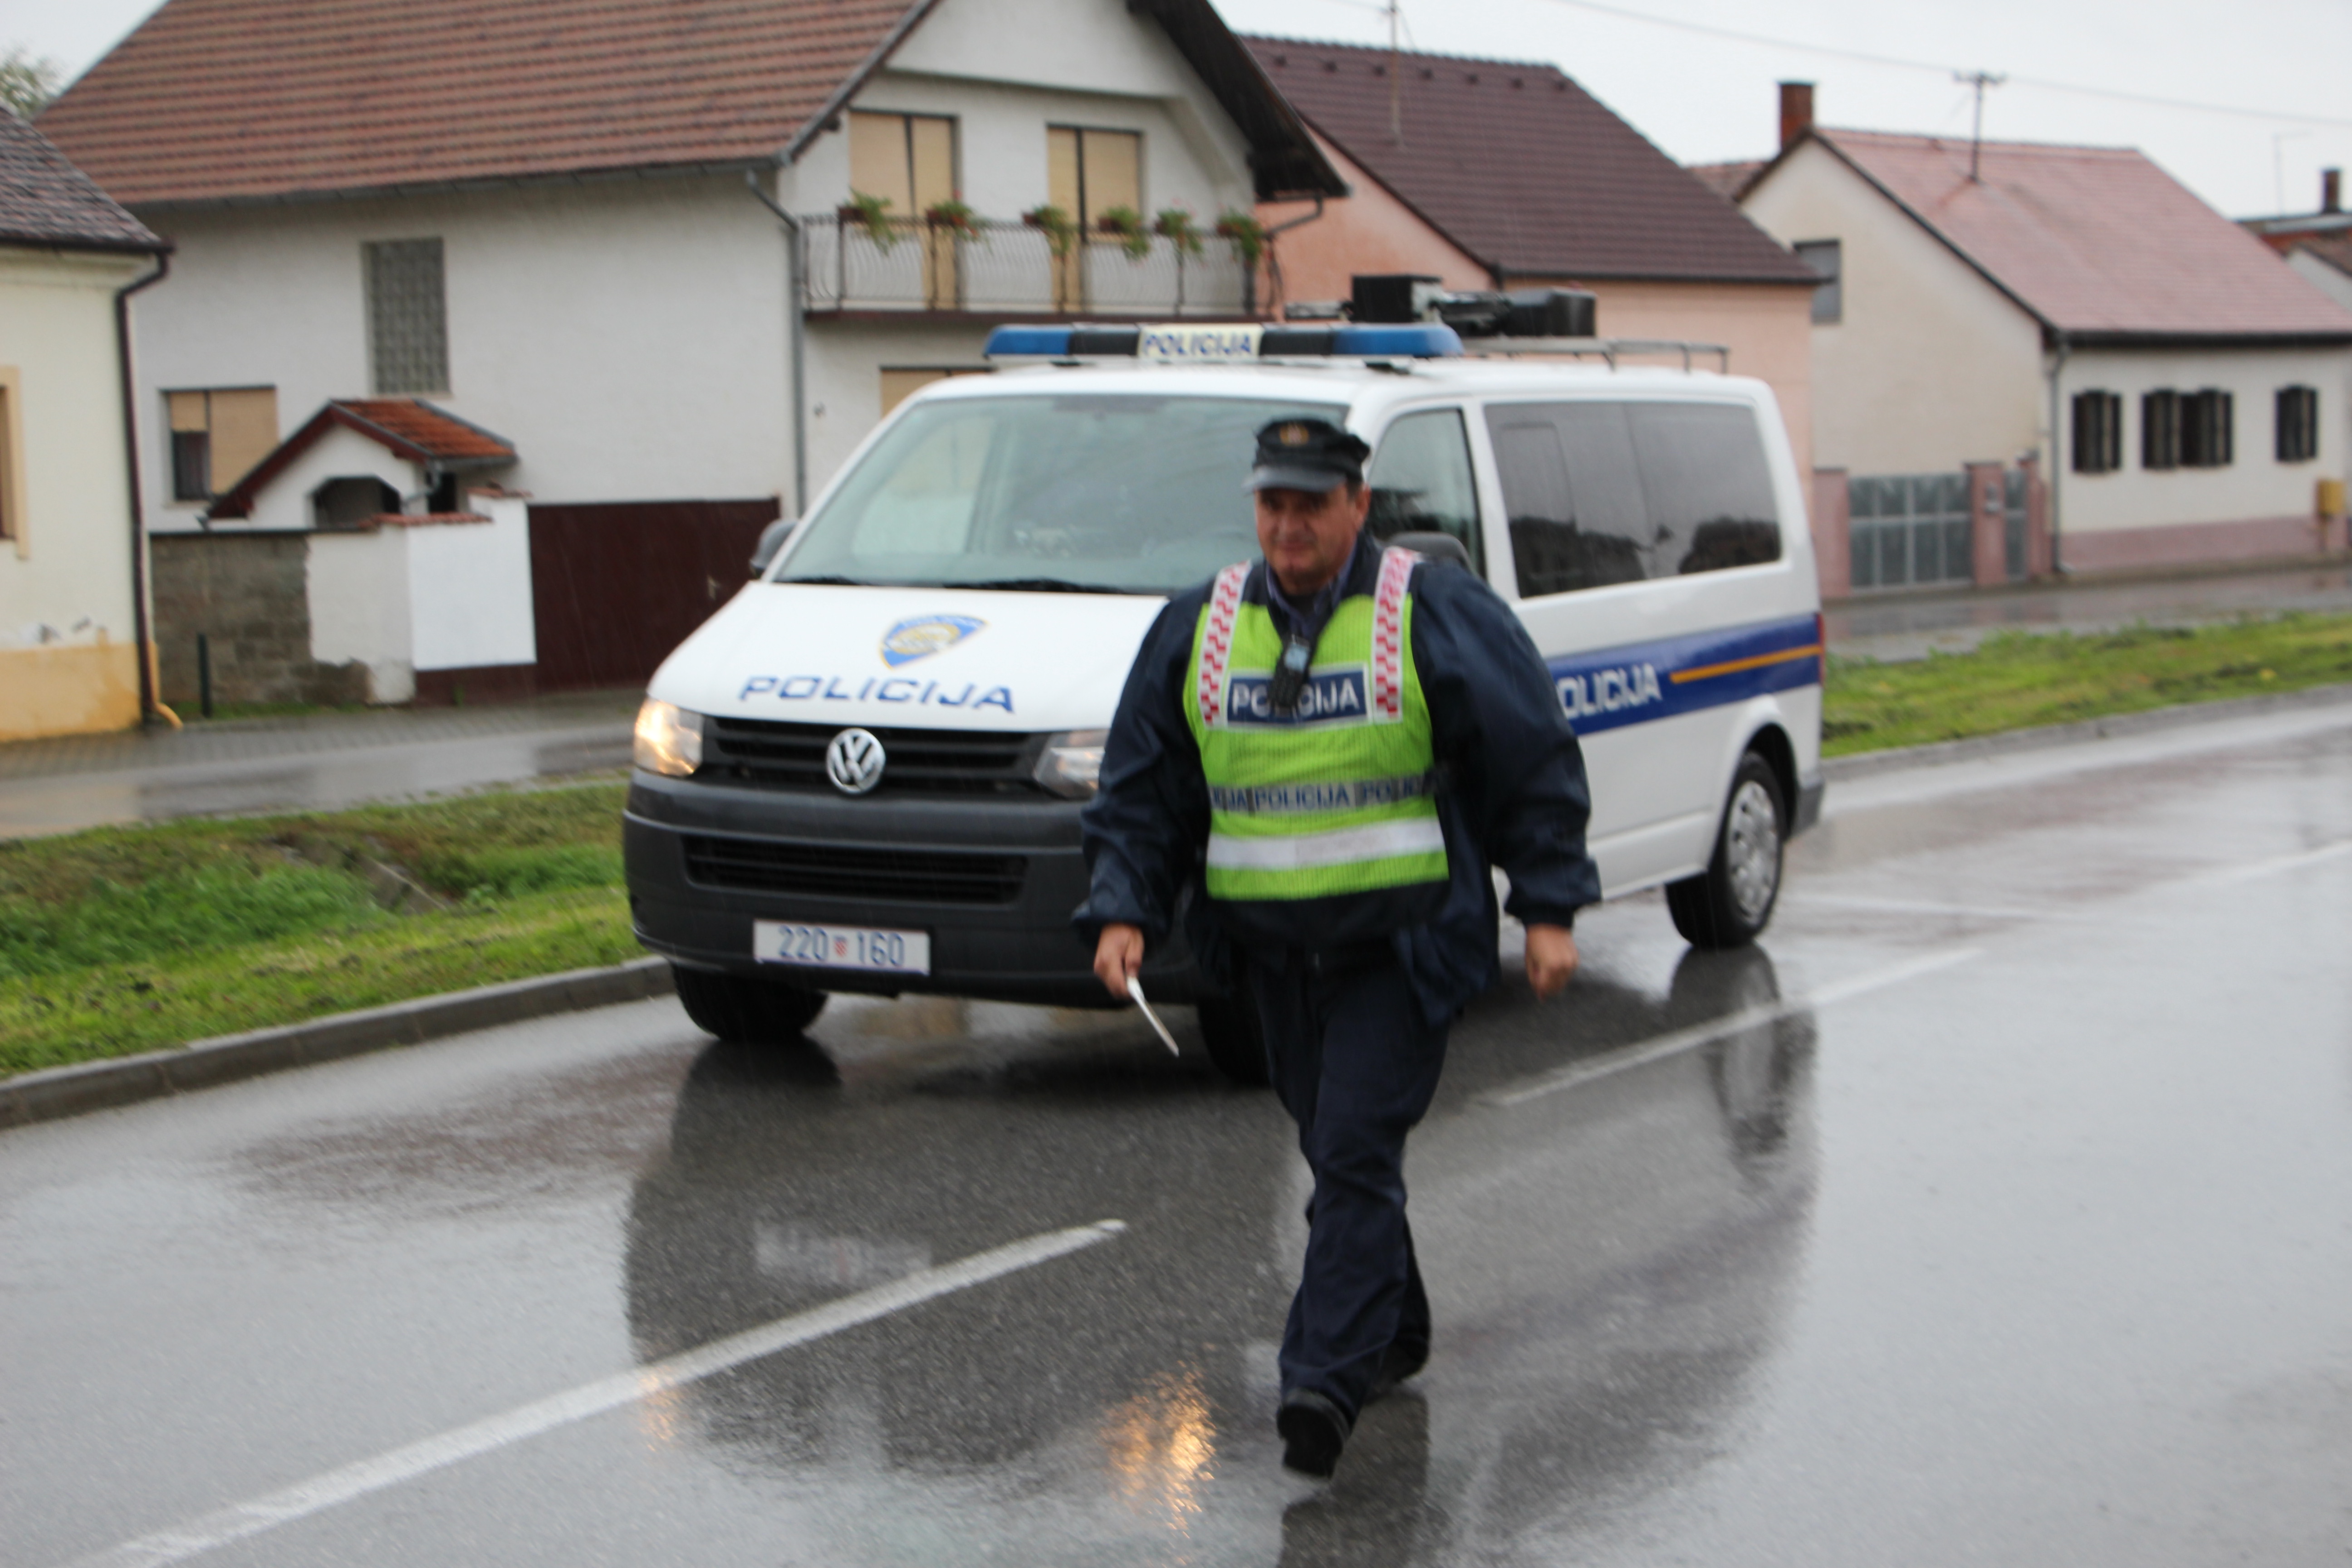 Požega.eu | U prometnoj nesreći ozlijeđena 29-godišnja vozačica i 8-godišnje dijete